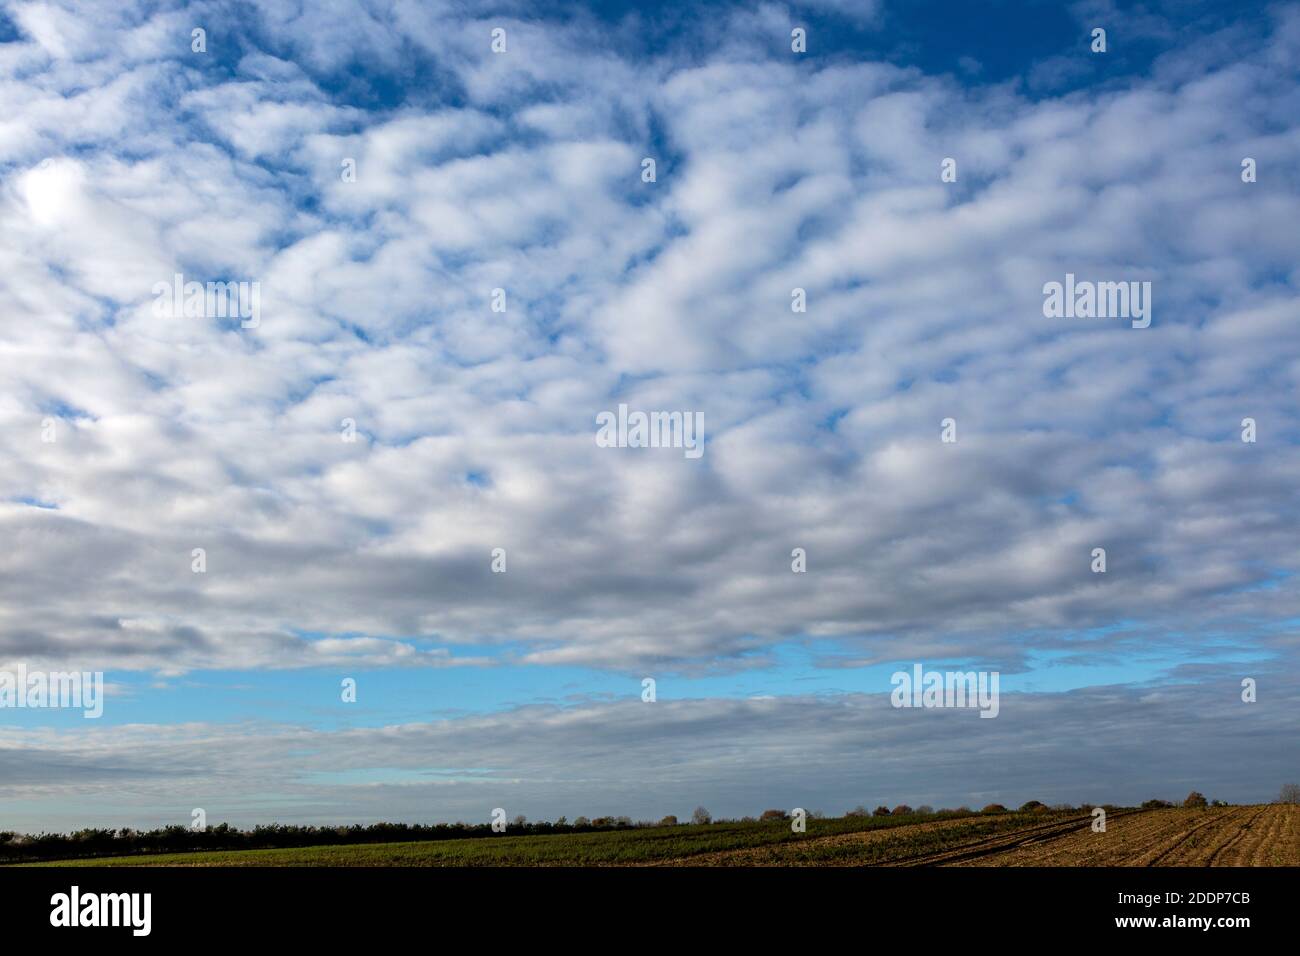 Formation de nuages de ciel de maquereau au-dessus du paysage dans Suffolk Sandlings AONB, Angleterre, Royaume-Uni Banque D'Images